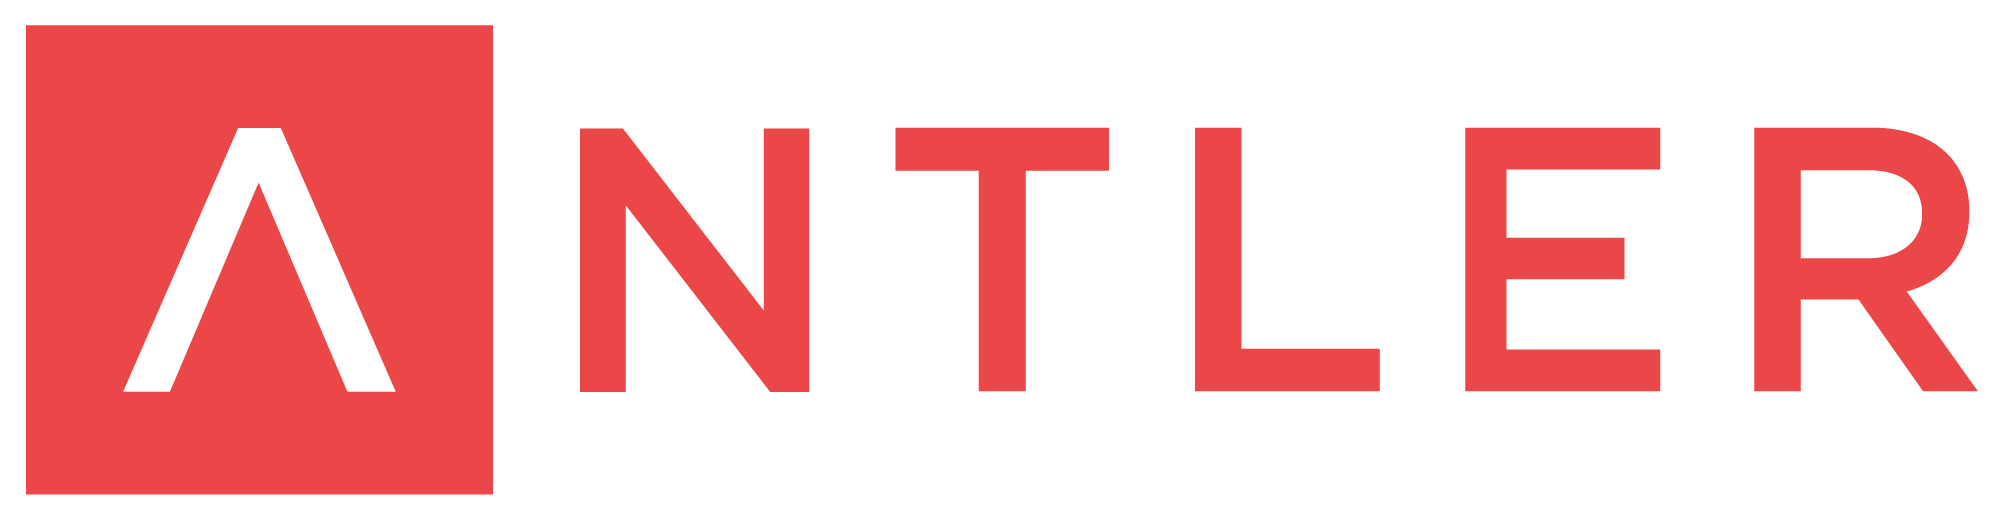 antler logo